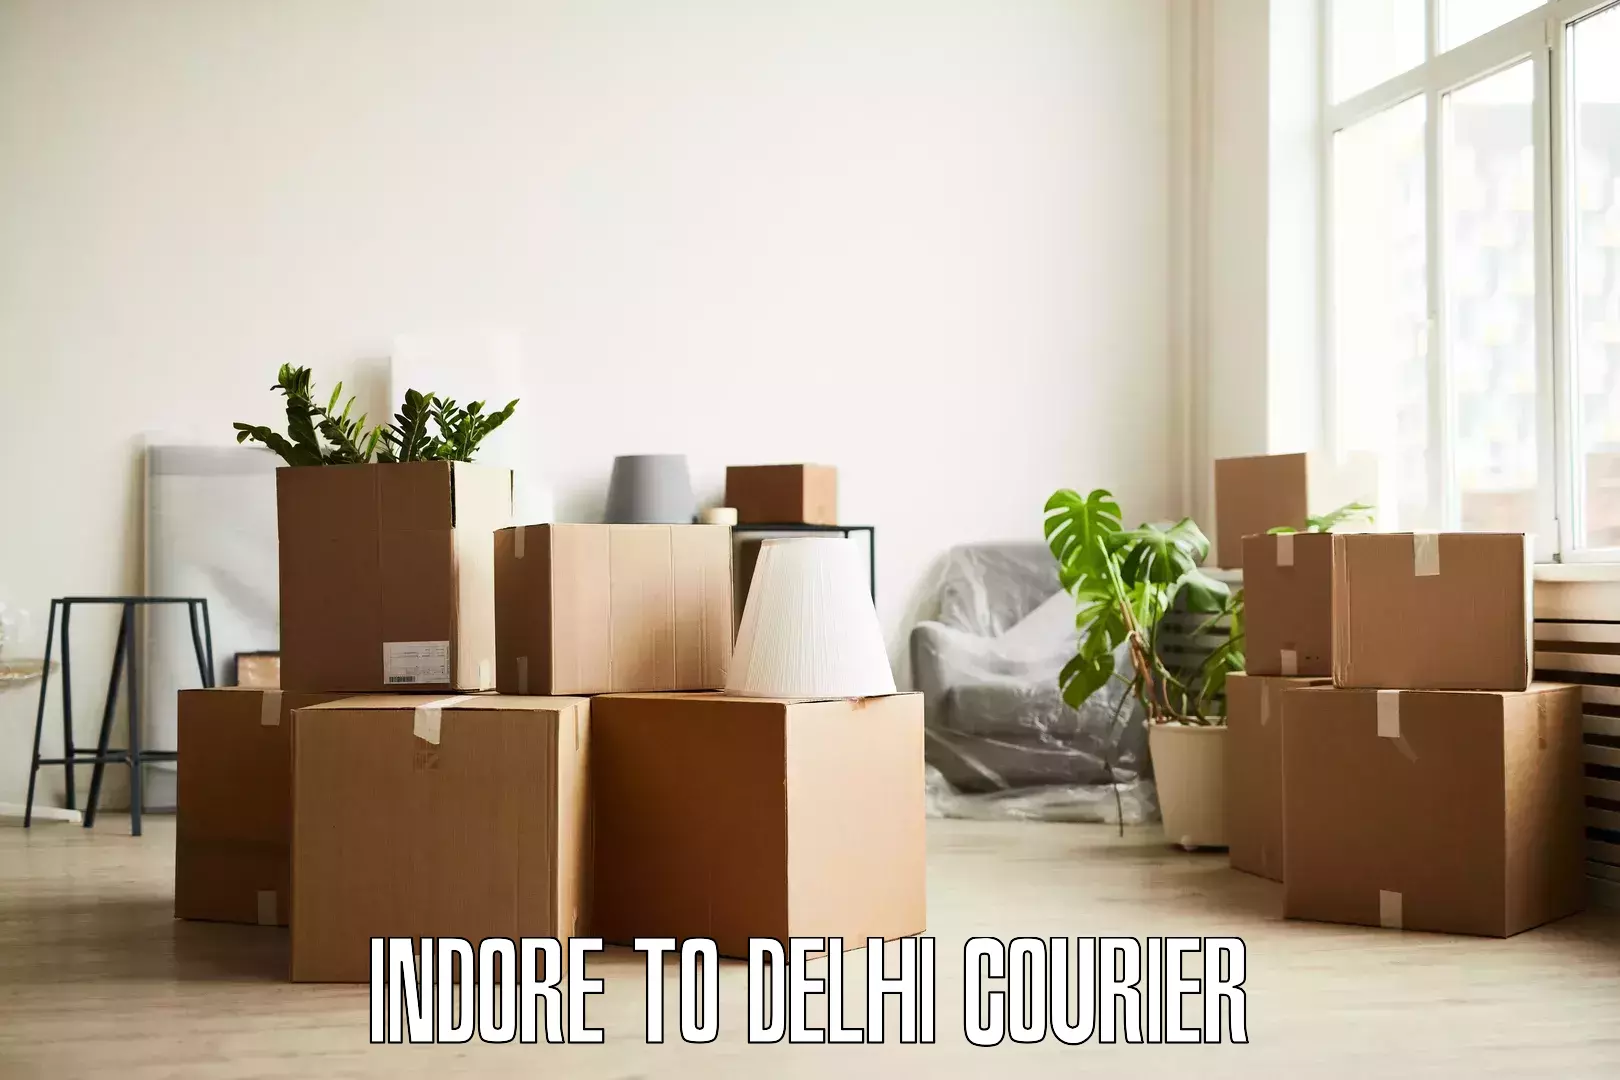 Quick furniture moving Indore to Delhi